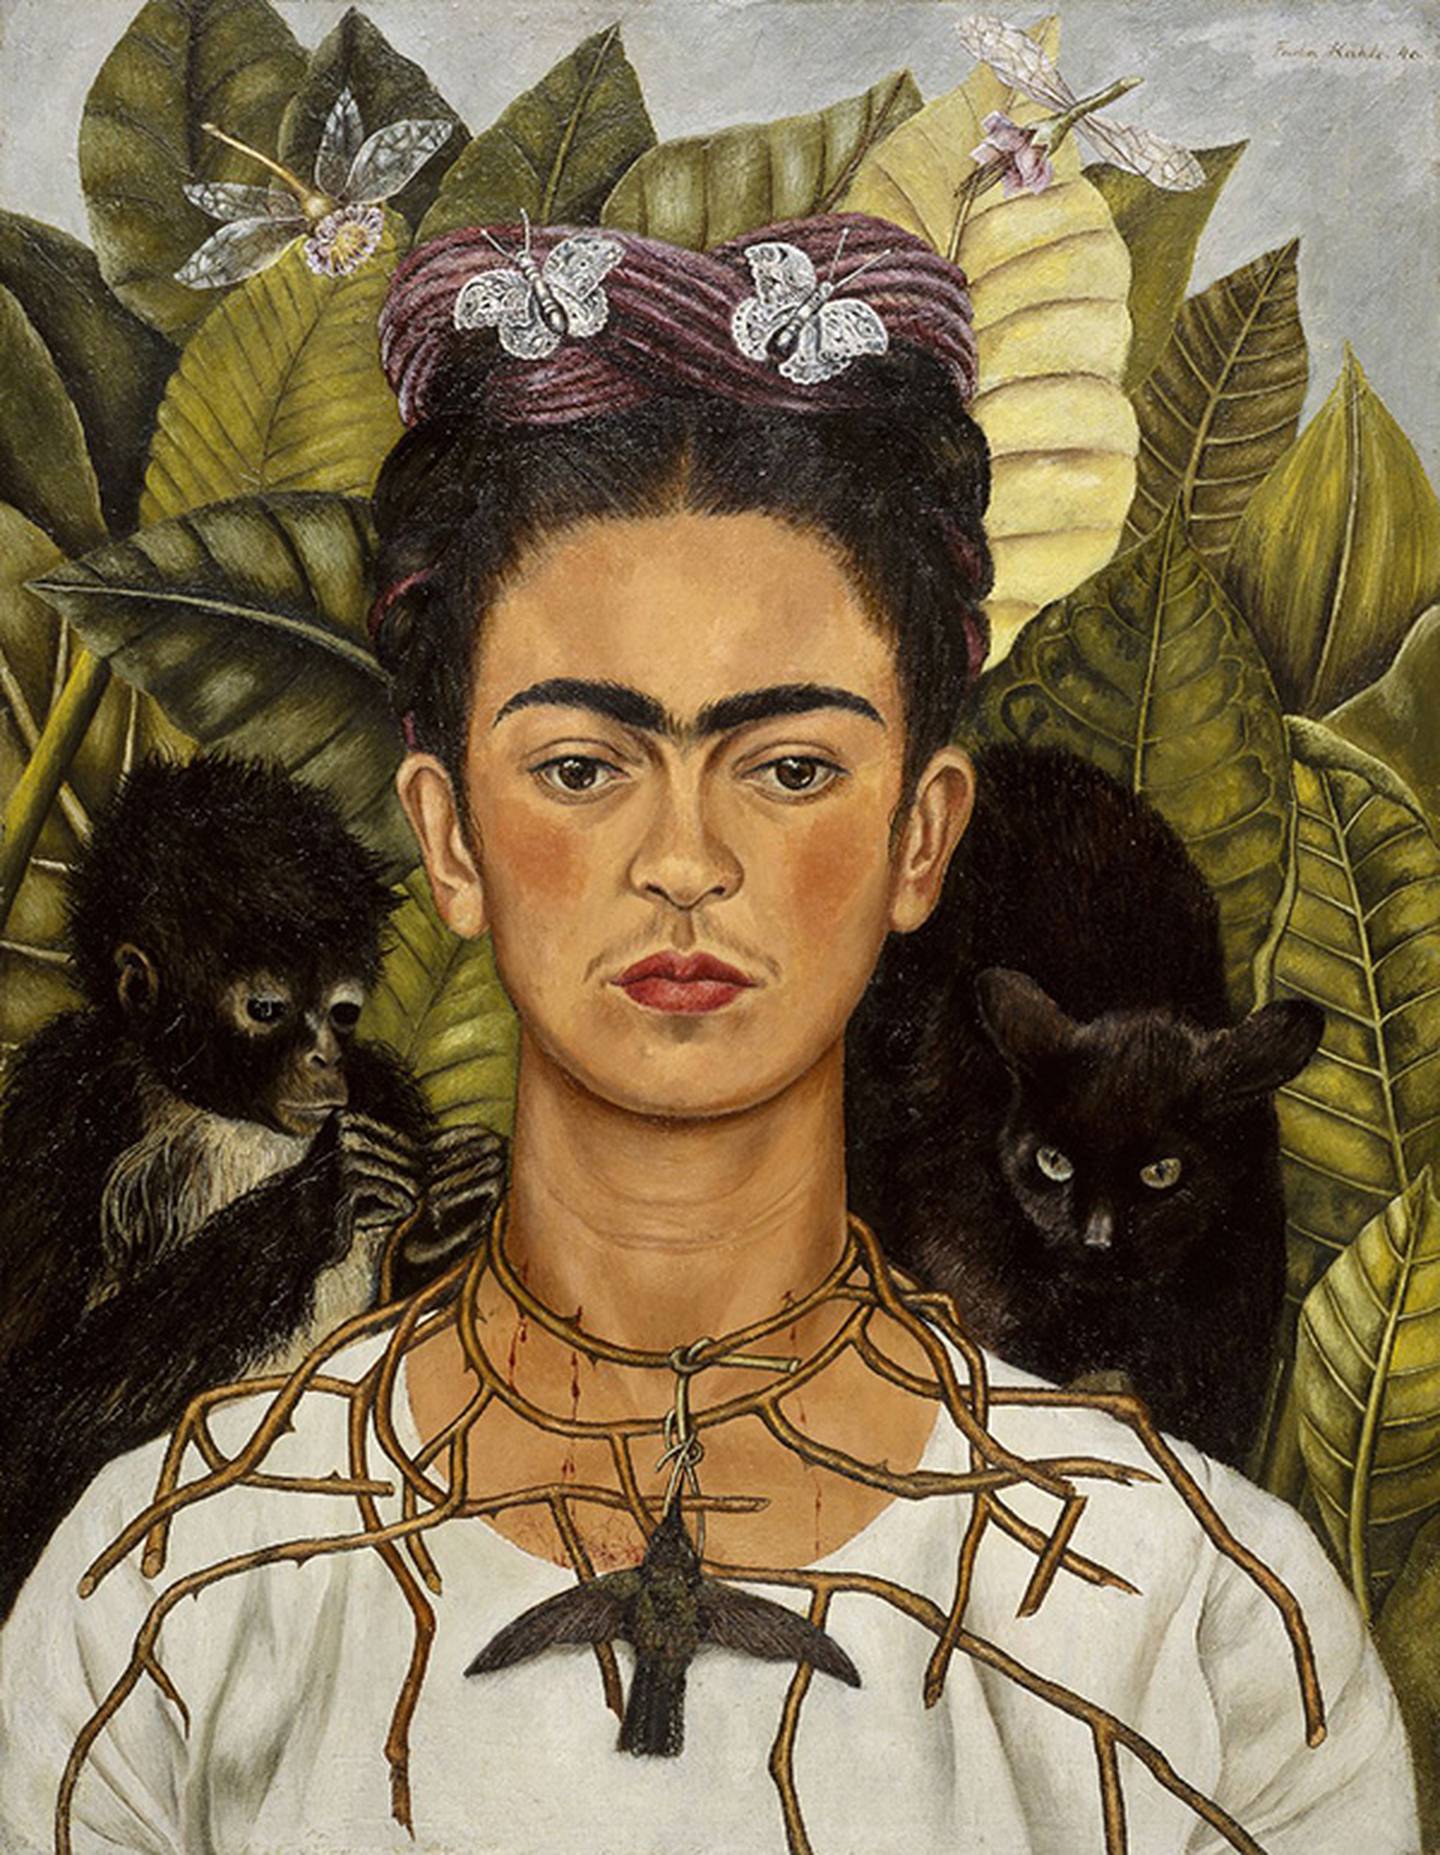 Algunos rasgos faciales, como los hoyuelos, el mentón hendido y la uniceja que se muestran aquí en un autorretrato de la artista Frida Kahlo, pueden tener bases genéticas relativamente simples, dicen los investigadores. Pero los estudios necesarios para demostrarlo aún no se han realizado.